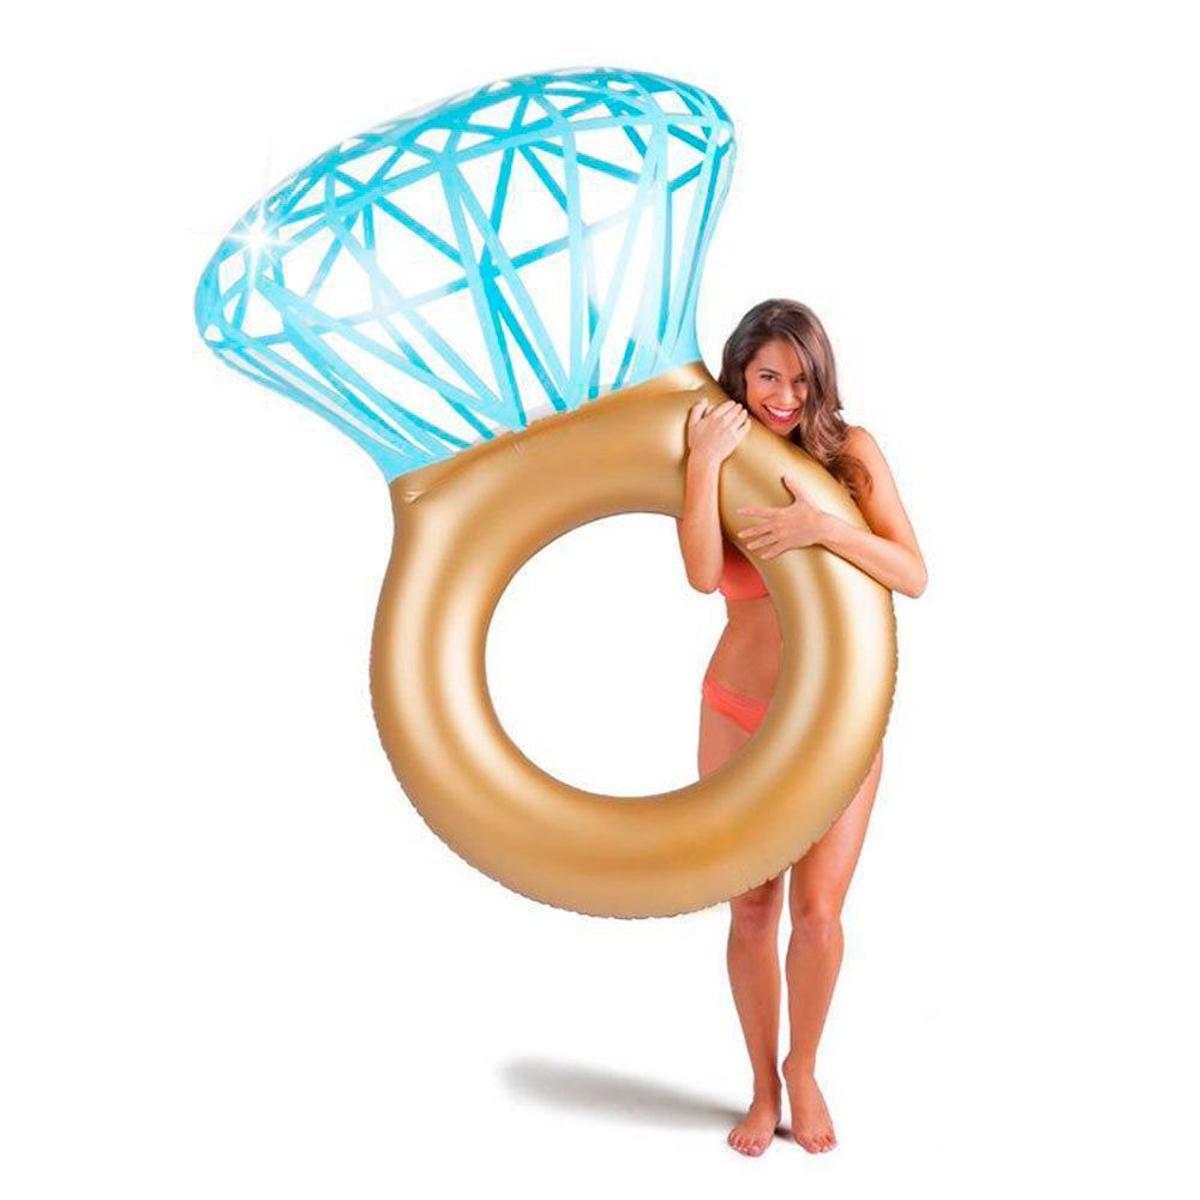 Flotador anillo de compromiso (precio: 16,55 euros)